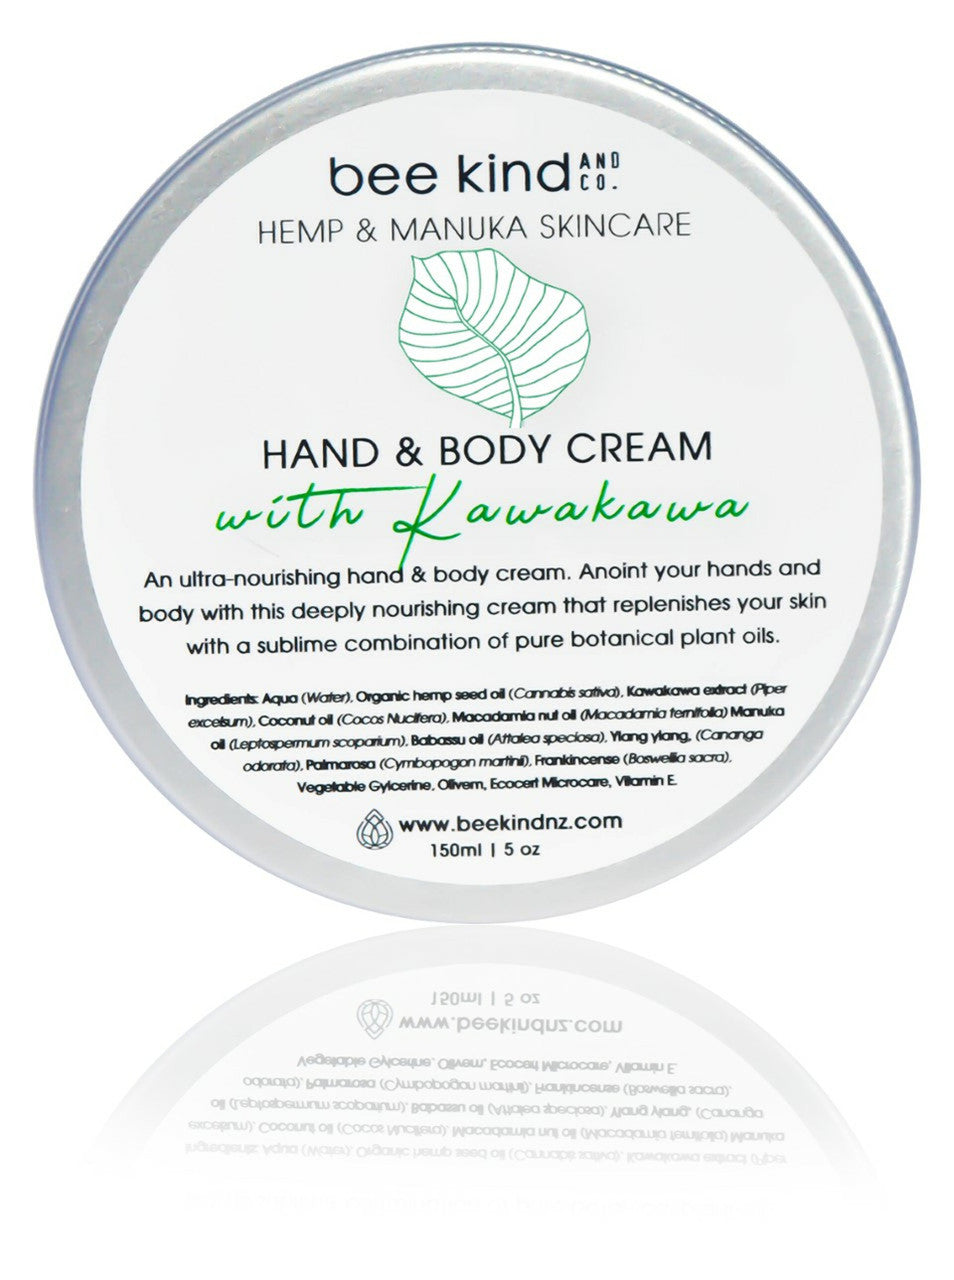 Hand and Body Cream with Kawakawa